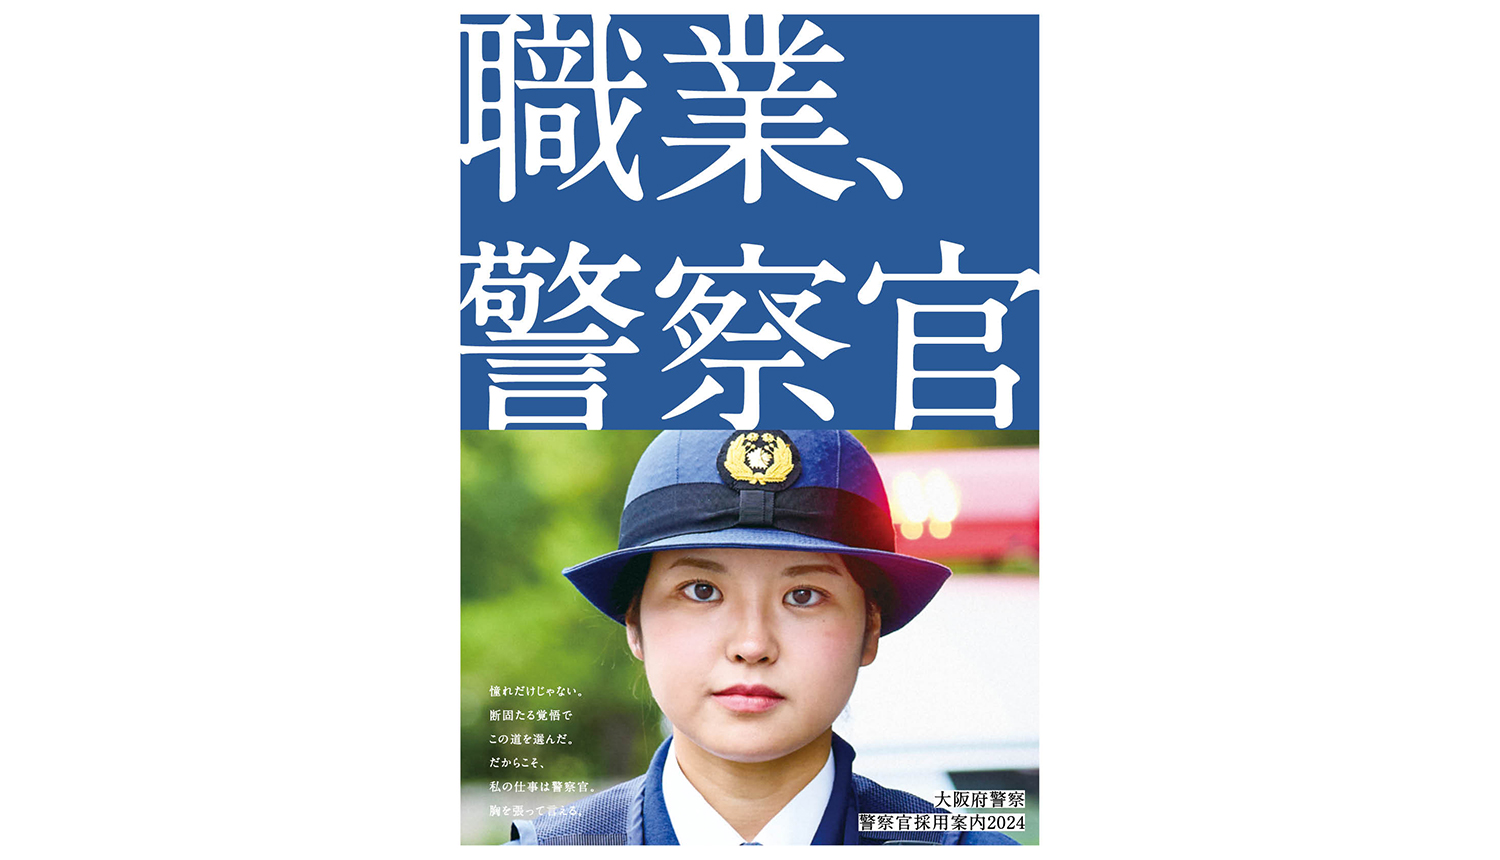 大阪府警察官募集広報用パンフレット